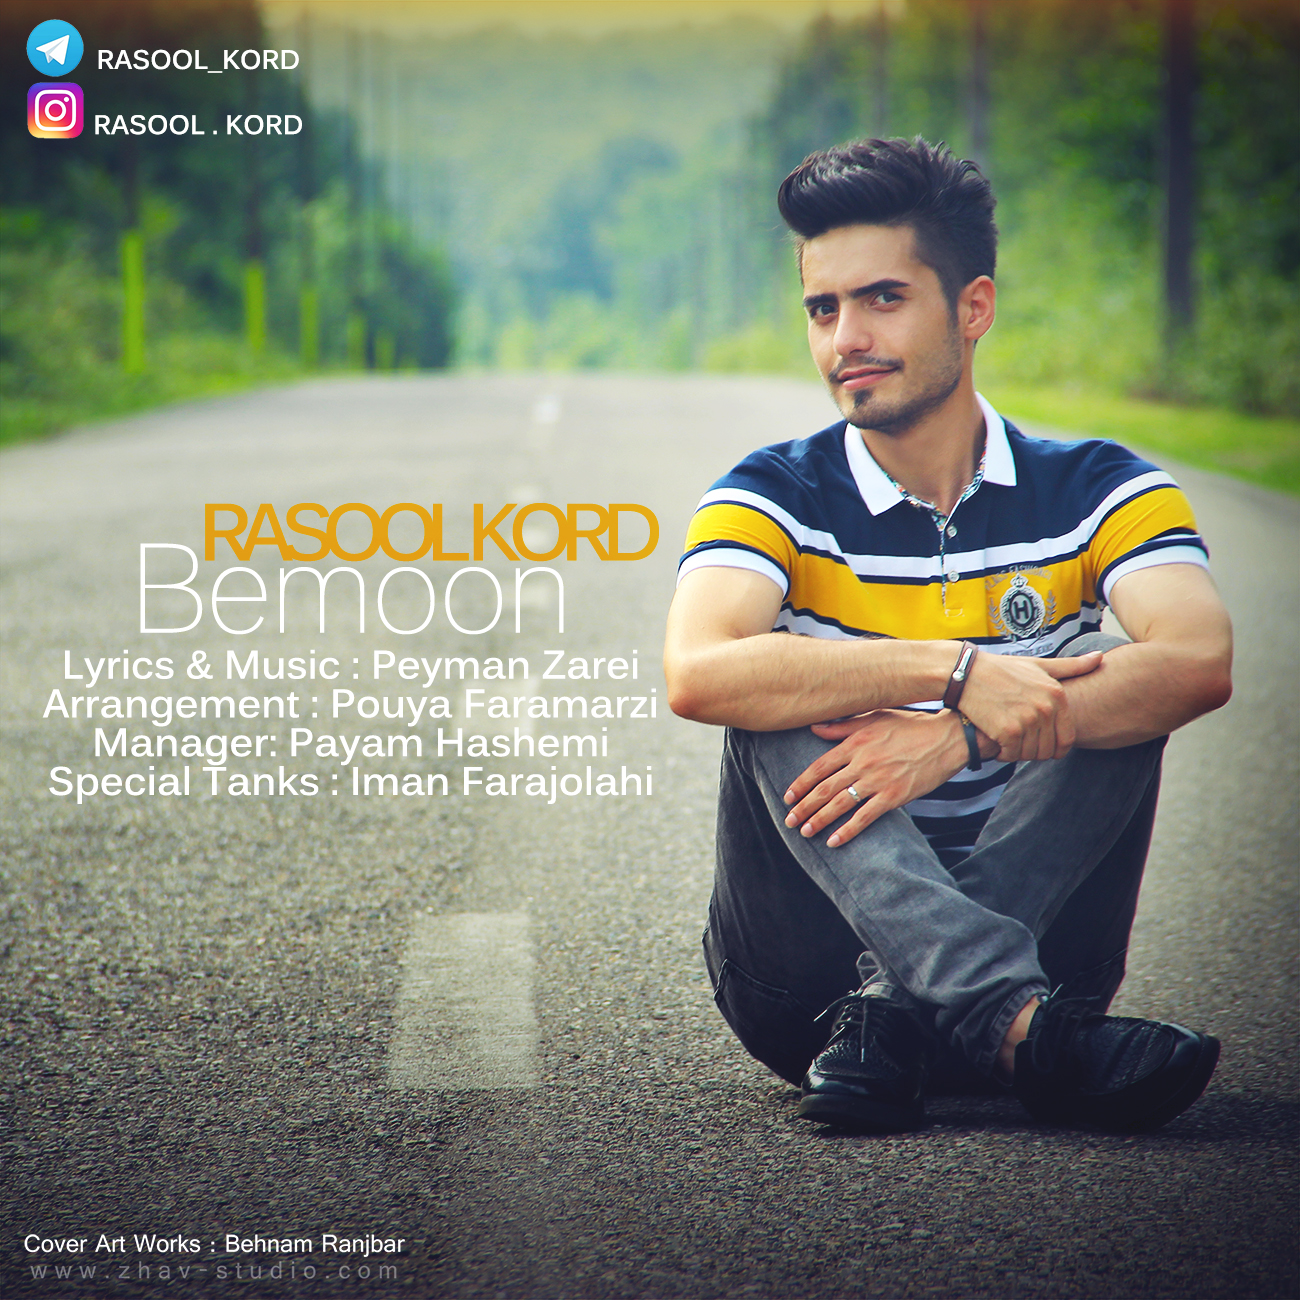 Rasool kord – Bemoon